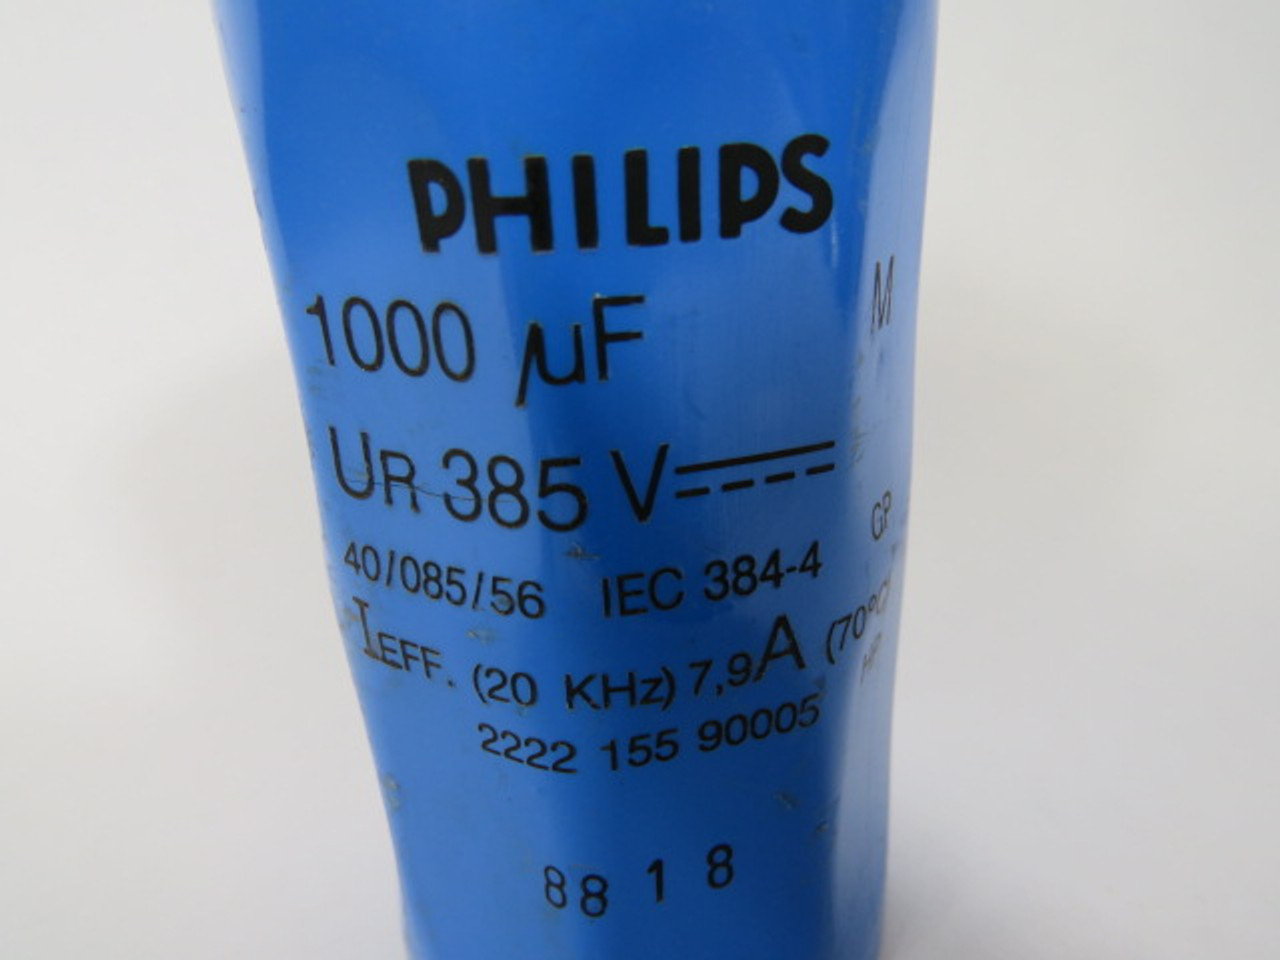 Phillips 2222-155-90005 Capacitor 1000uf 385VDC 20kHz 7.9A 70DEG C USED